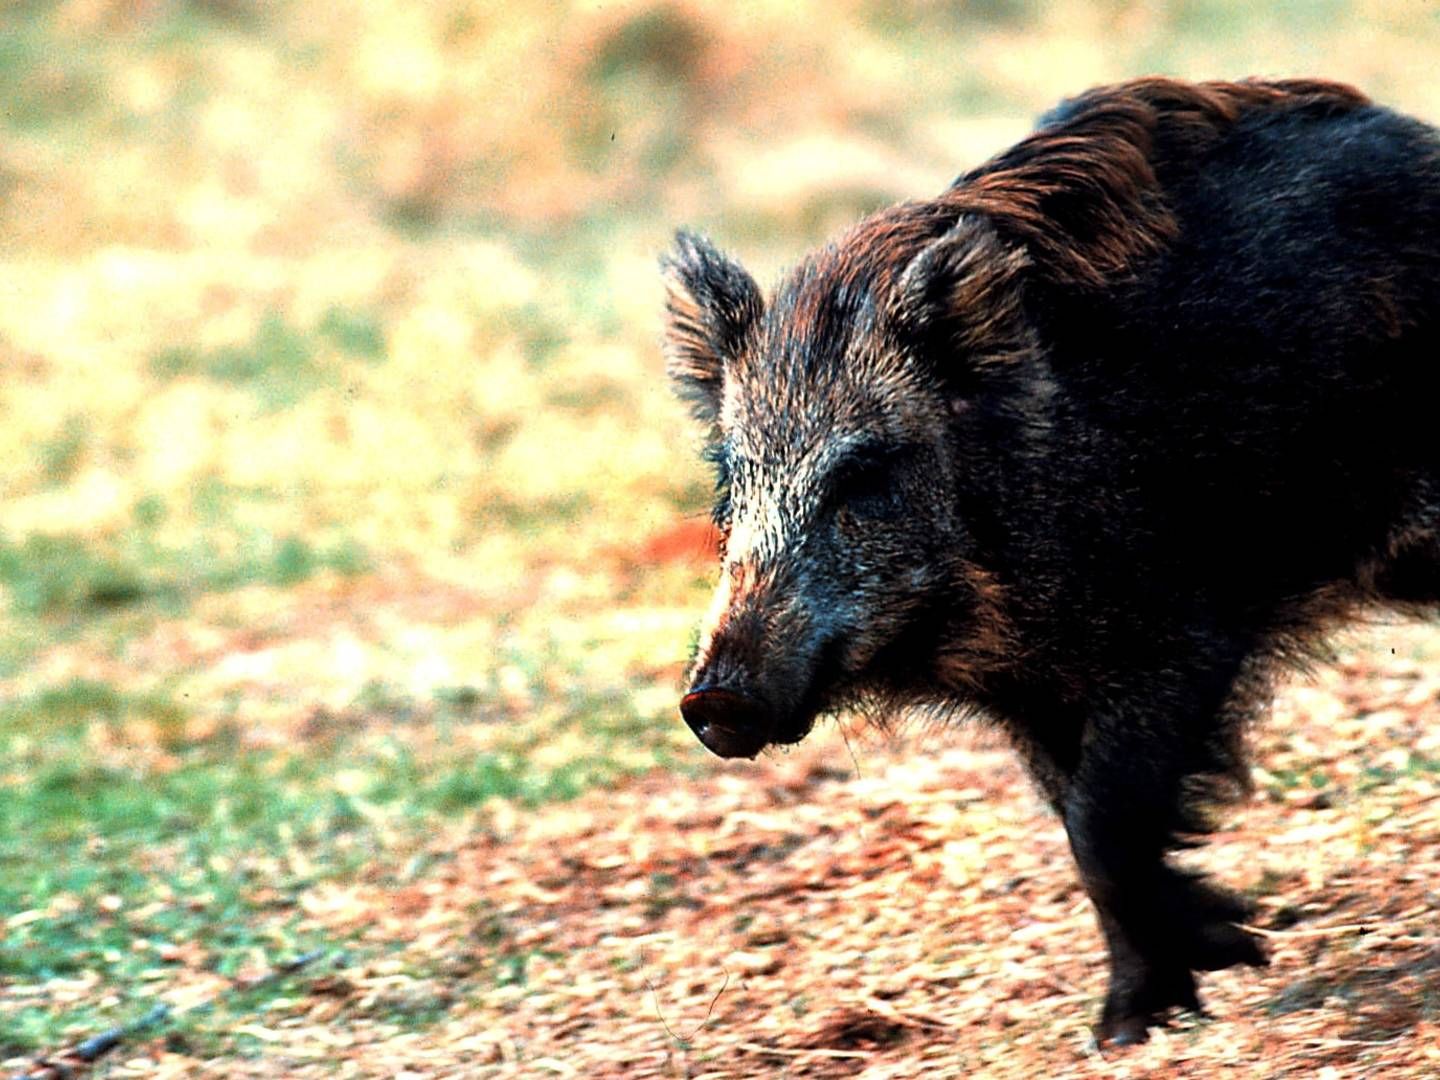 Polen har været kendt for en endog meget stor population af vildsvin i landets skove. Det har vanskeliggjort bekæmpelsen af svinesygdommen afrikansk svinepest. | Foto: Carsten Ingemann